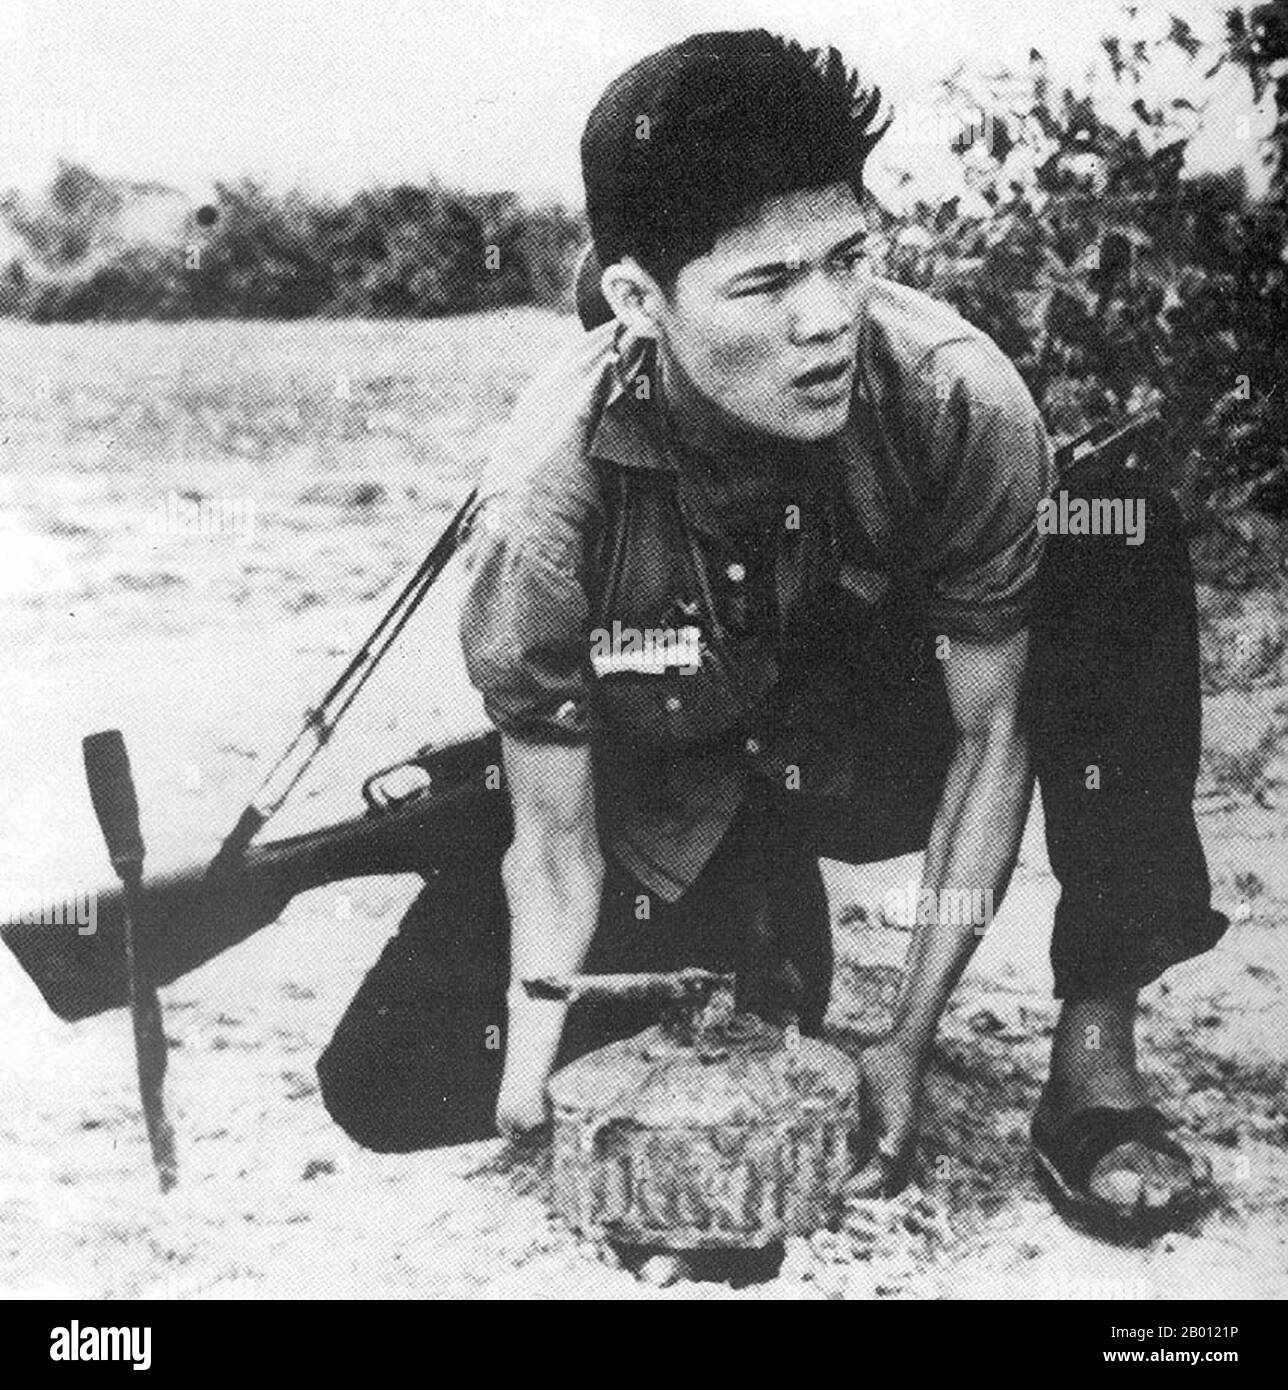 Vietnam: Eine NLF-Guerilla posiert, indem sie eine Landmine für ein Propagandafoto legt, c. 1966. Der Vietcong oder die Nationale Front zur Befreiung Südvietnams (NLF) war eine politische Organisation und Armee in Südvietnam und Kambodscha, die während des Vietnamkrieges (1955–1975) gegen die Regierungen der Vereinigten Staaten und Südvietnams kämpfte. Sie hatte sowohl Guerilla- als auch reguläre Armeeeinheiten, sowie ein Netzwerk von Kadern, die Bauern in dem von ihr kontrollierten Gebiet organisierten. Viele Soldaten wurden in Südvietnam rekrutiert, aber andere waren der Volksarmee Vietnams (PAVN) angeschlossen. Stockfoto